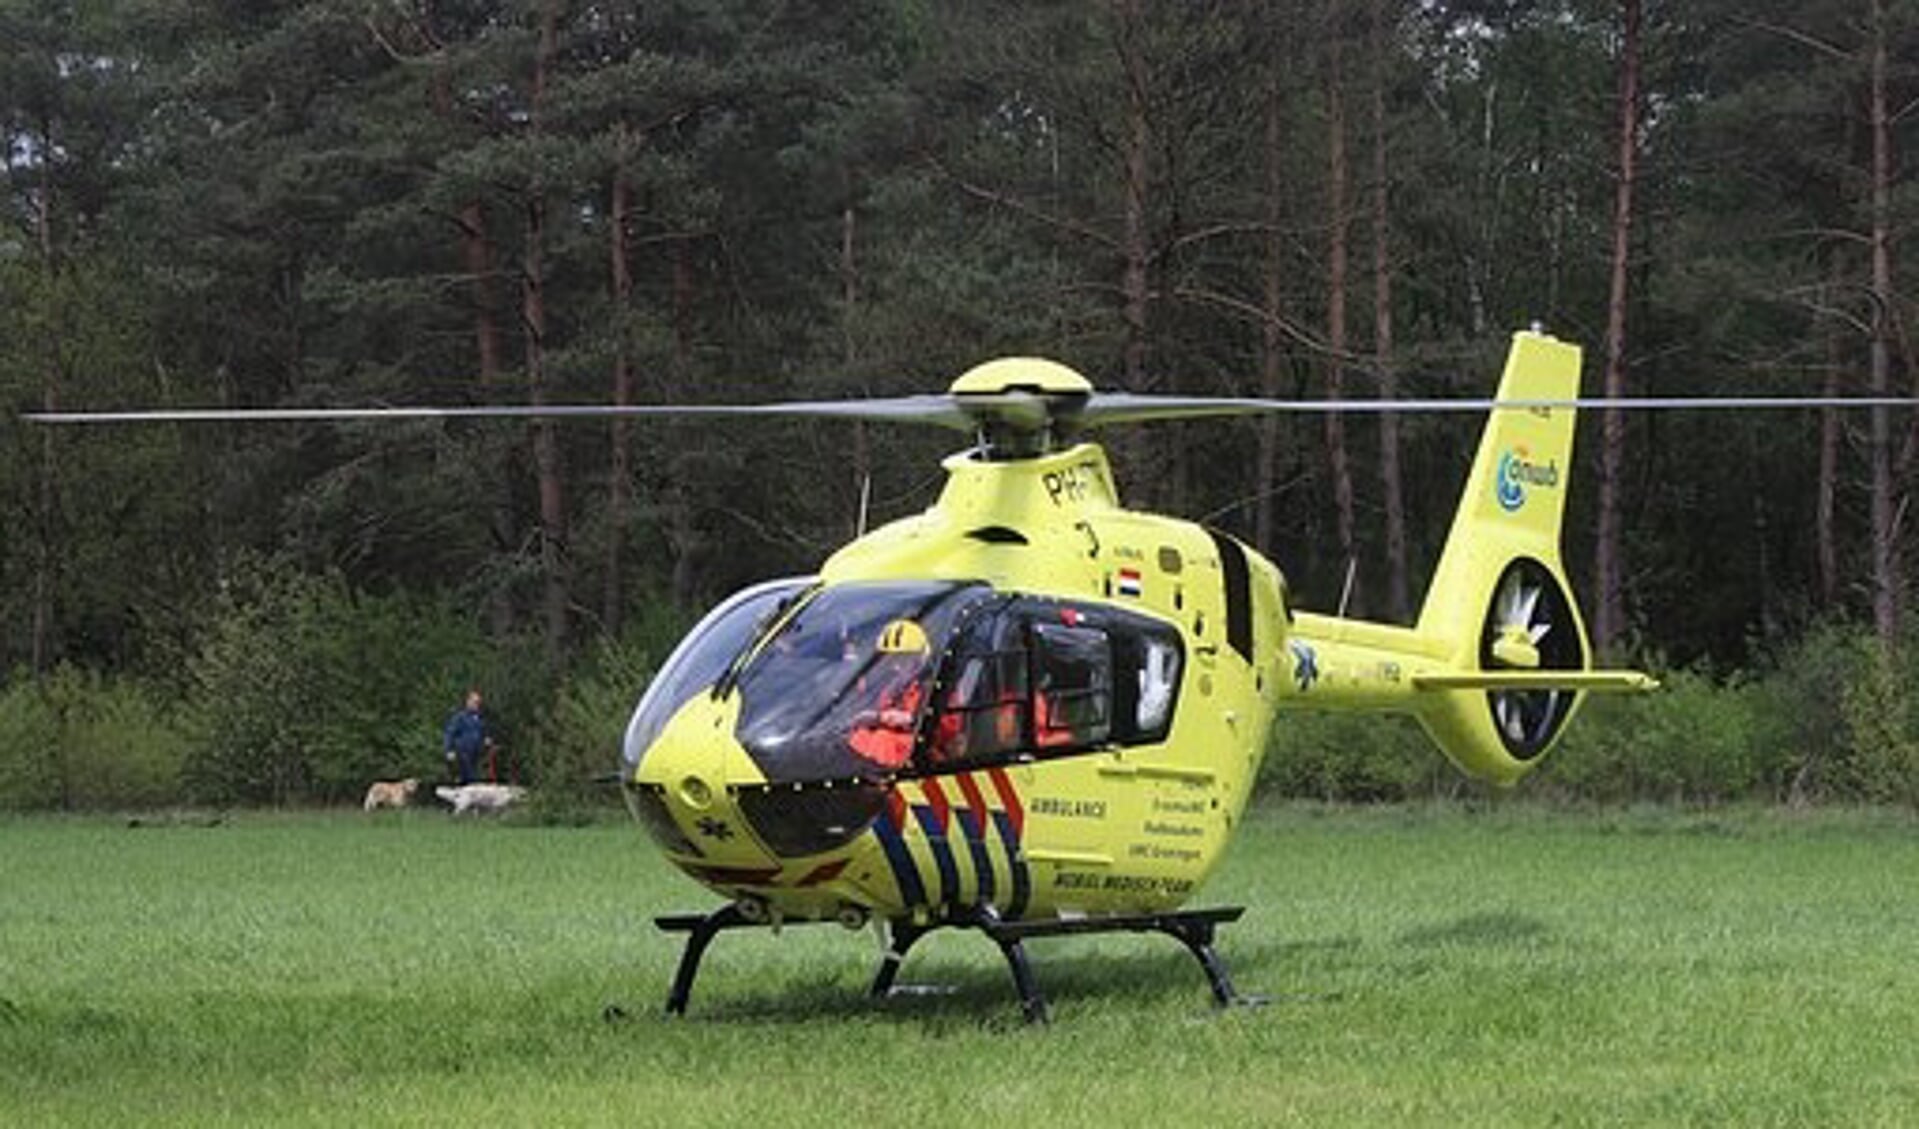 De traumahelikopter werd opgeroepen voor een ongeval op de Bergsebaan waarbij een motorrijder gewond raakte. 